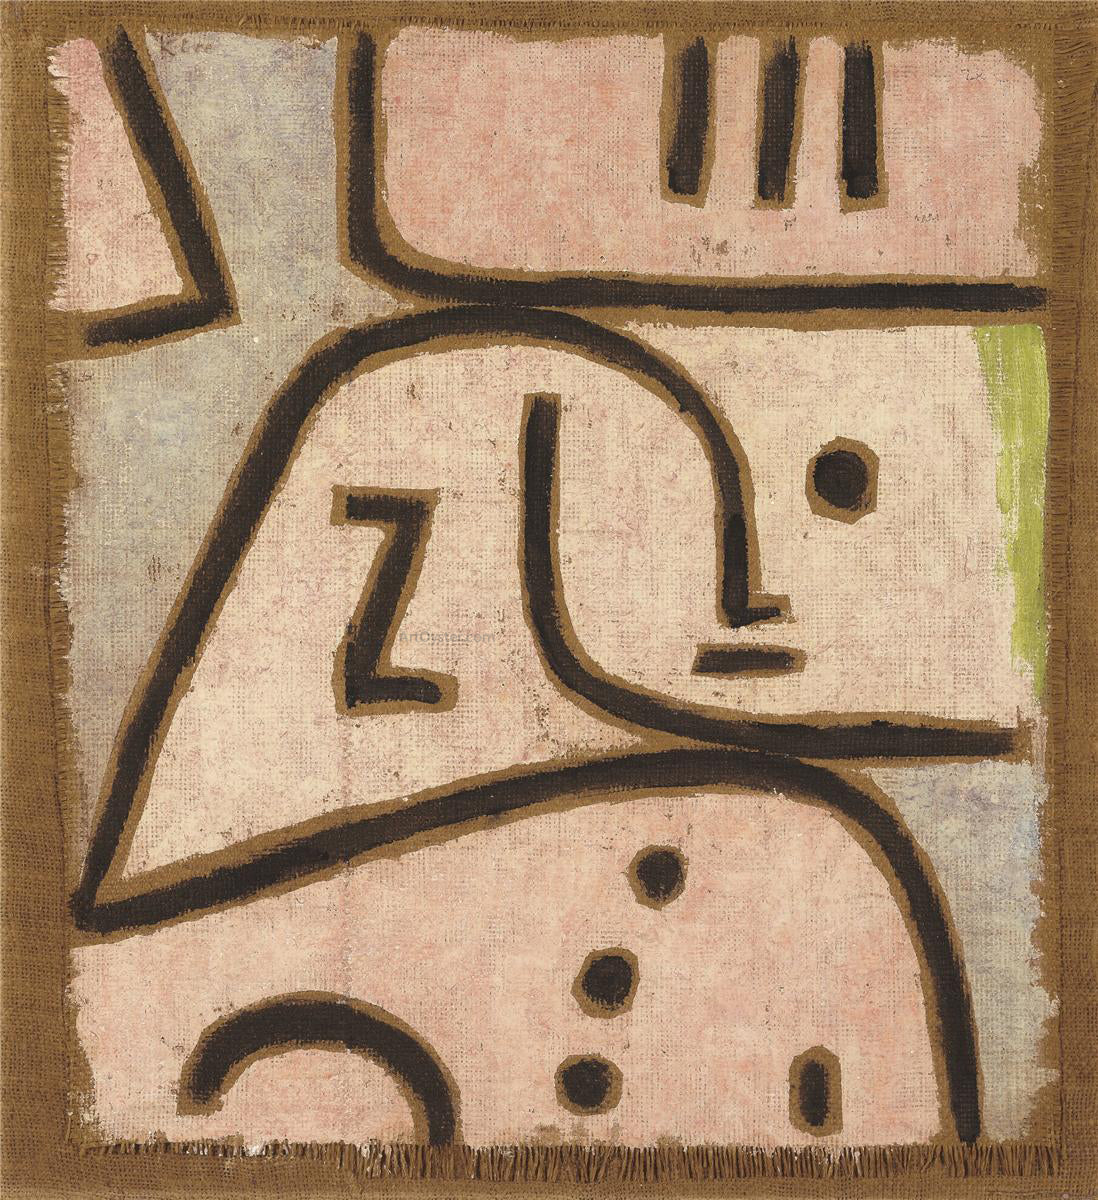  Paul Klee Wi in Memoriam - Hand Painted Oil Painting